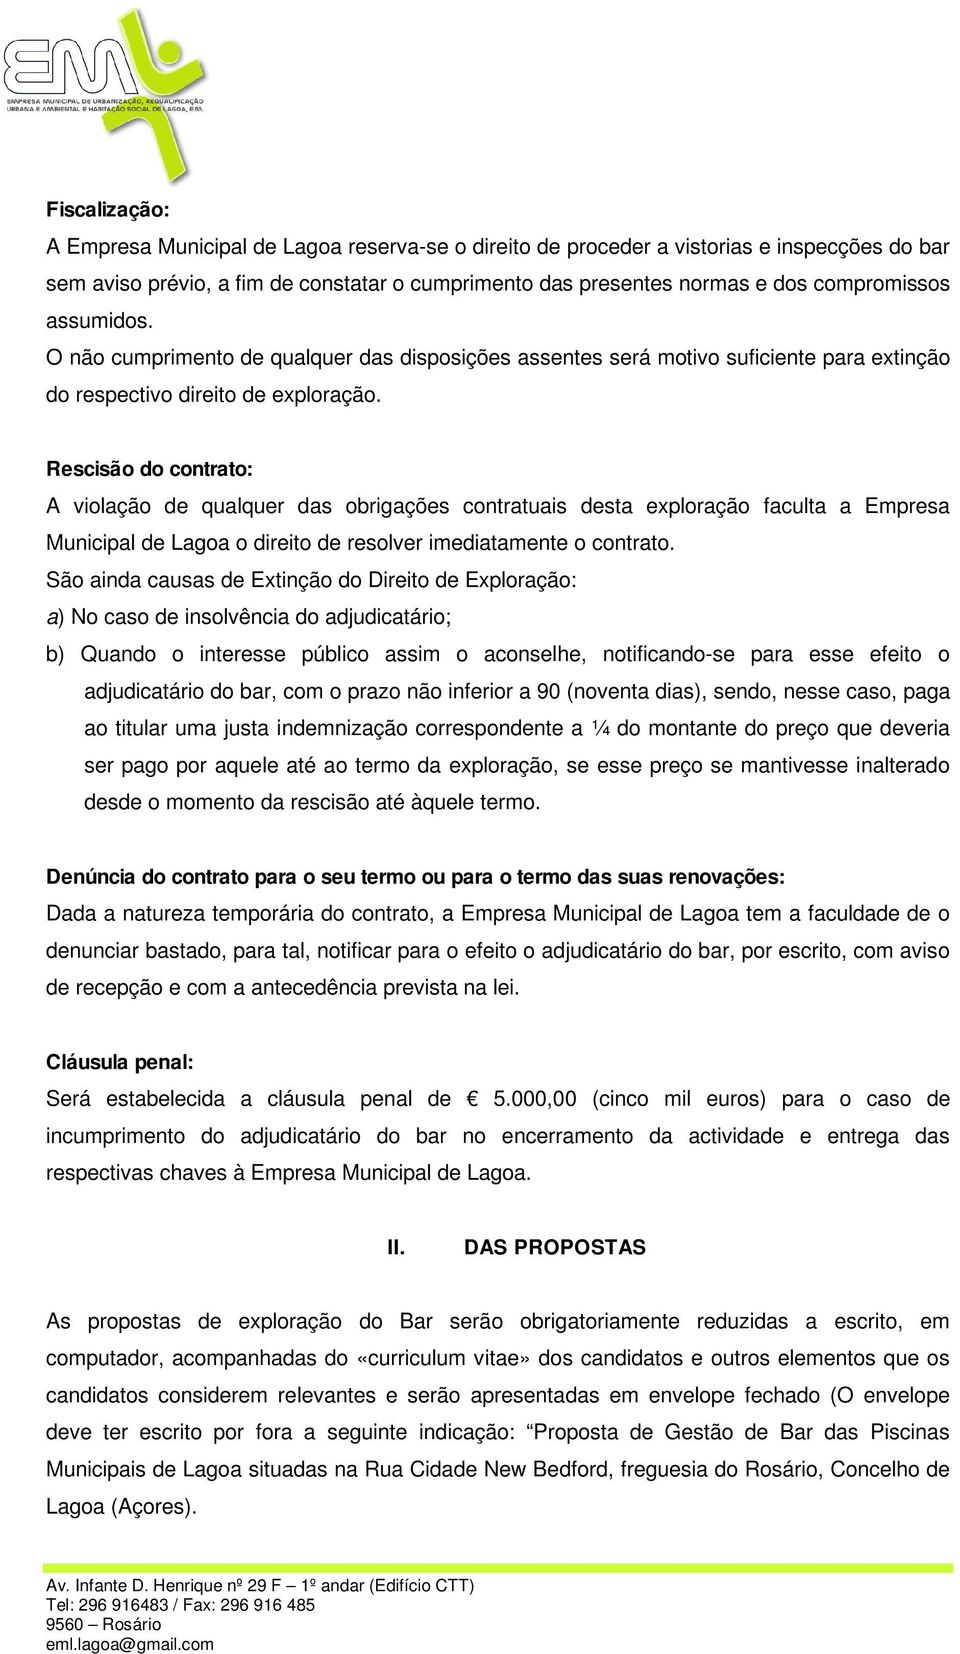 Rescisão do contrato: A violação de qualquer das obrigações contratuais desta exploração faculta a Empresa Municipal de Lagoa o direito de resolver imediatamente o contrato.